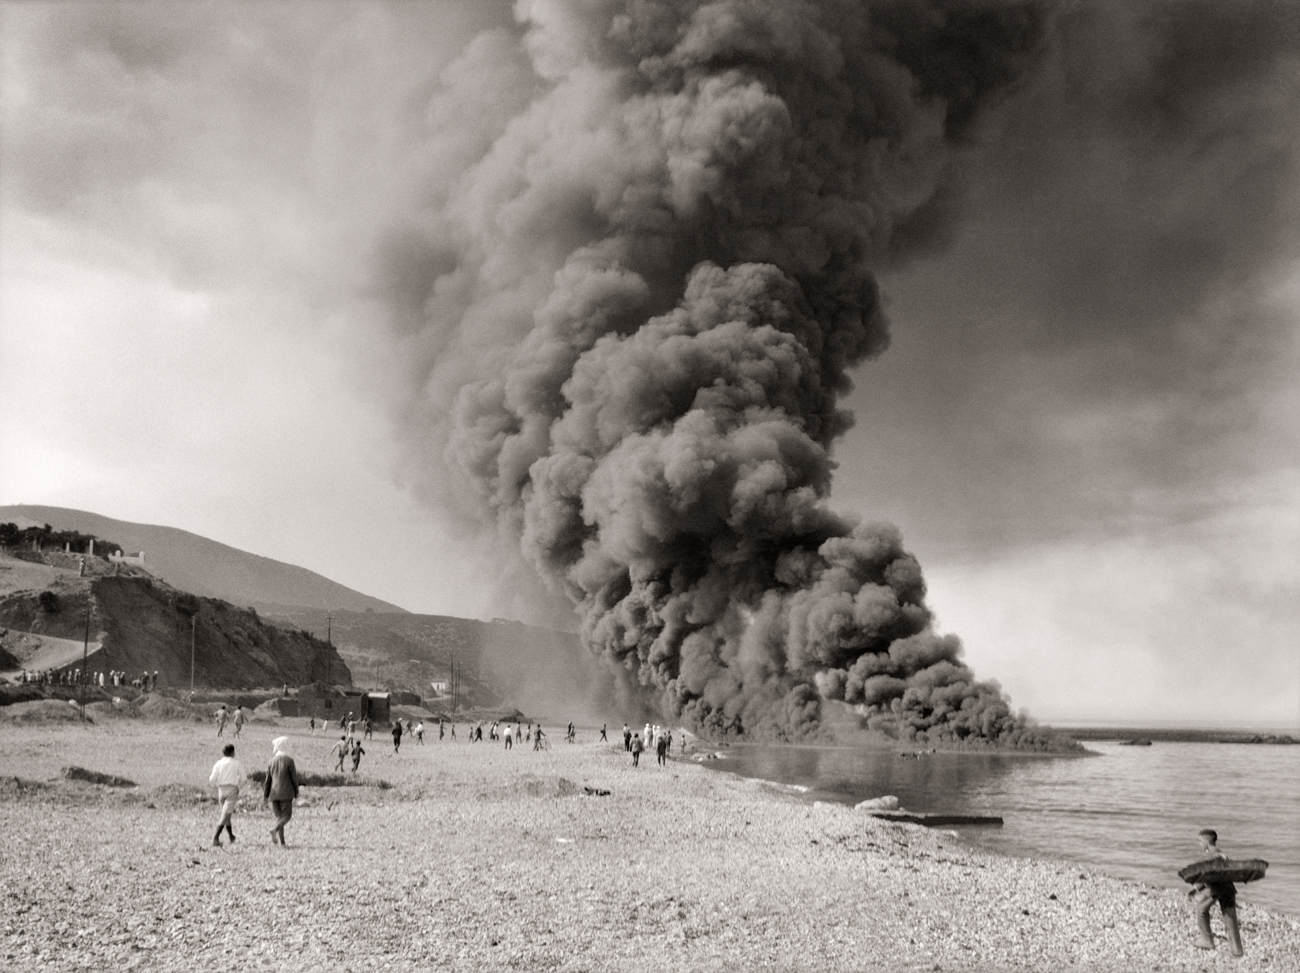 Bartolome Ros. Incendio de una carga de fuel en la playa de Calamocarro, Ceuta.<br/>Gelatina de plata / Silver gelatin